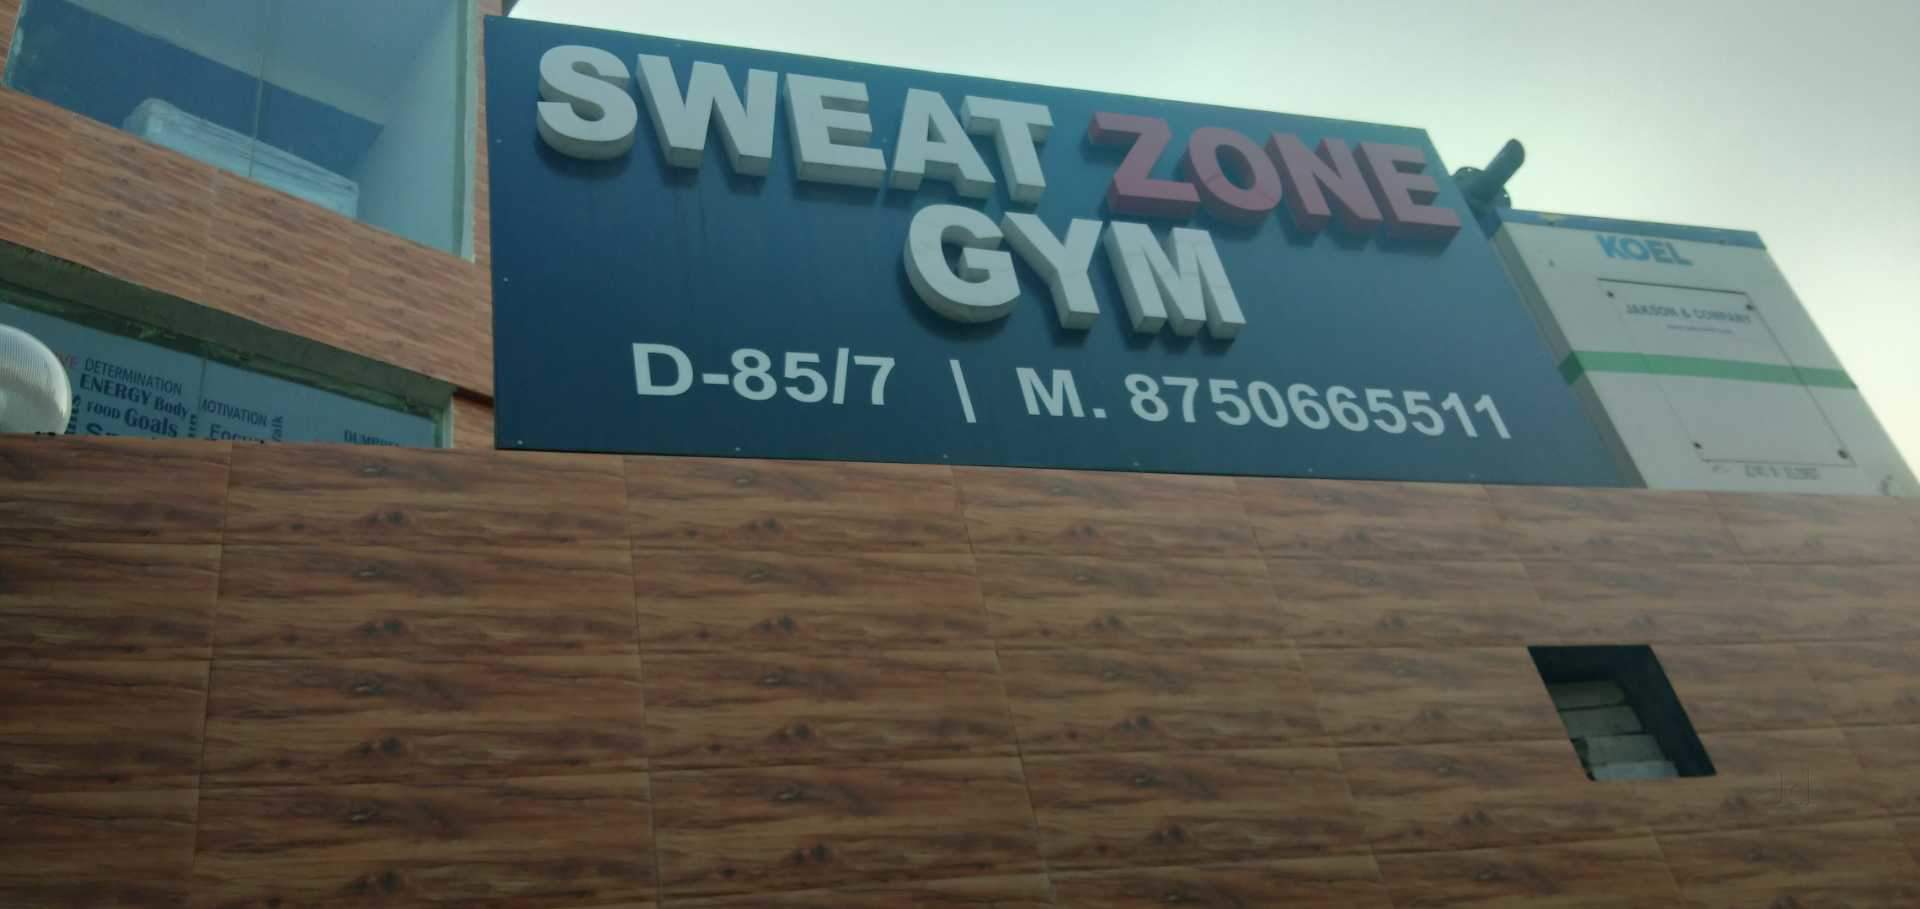 Noida-Sector-51-Sweat-Zone-Gym-_679_Njc5_MjE1Mg